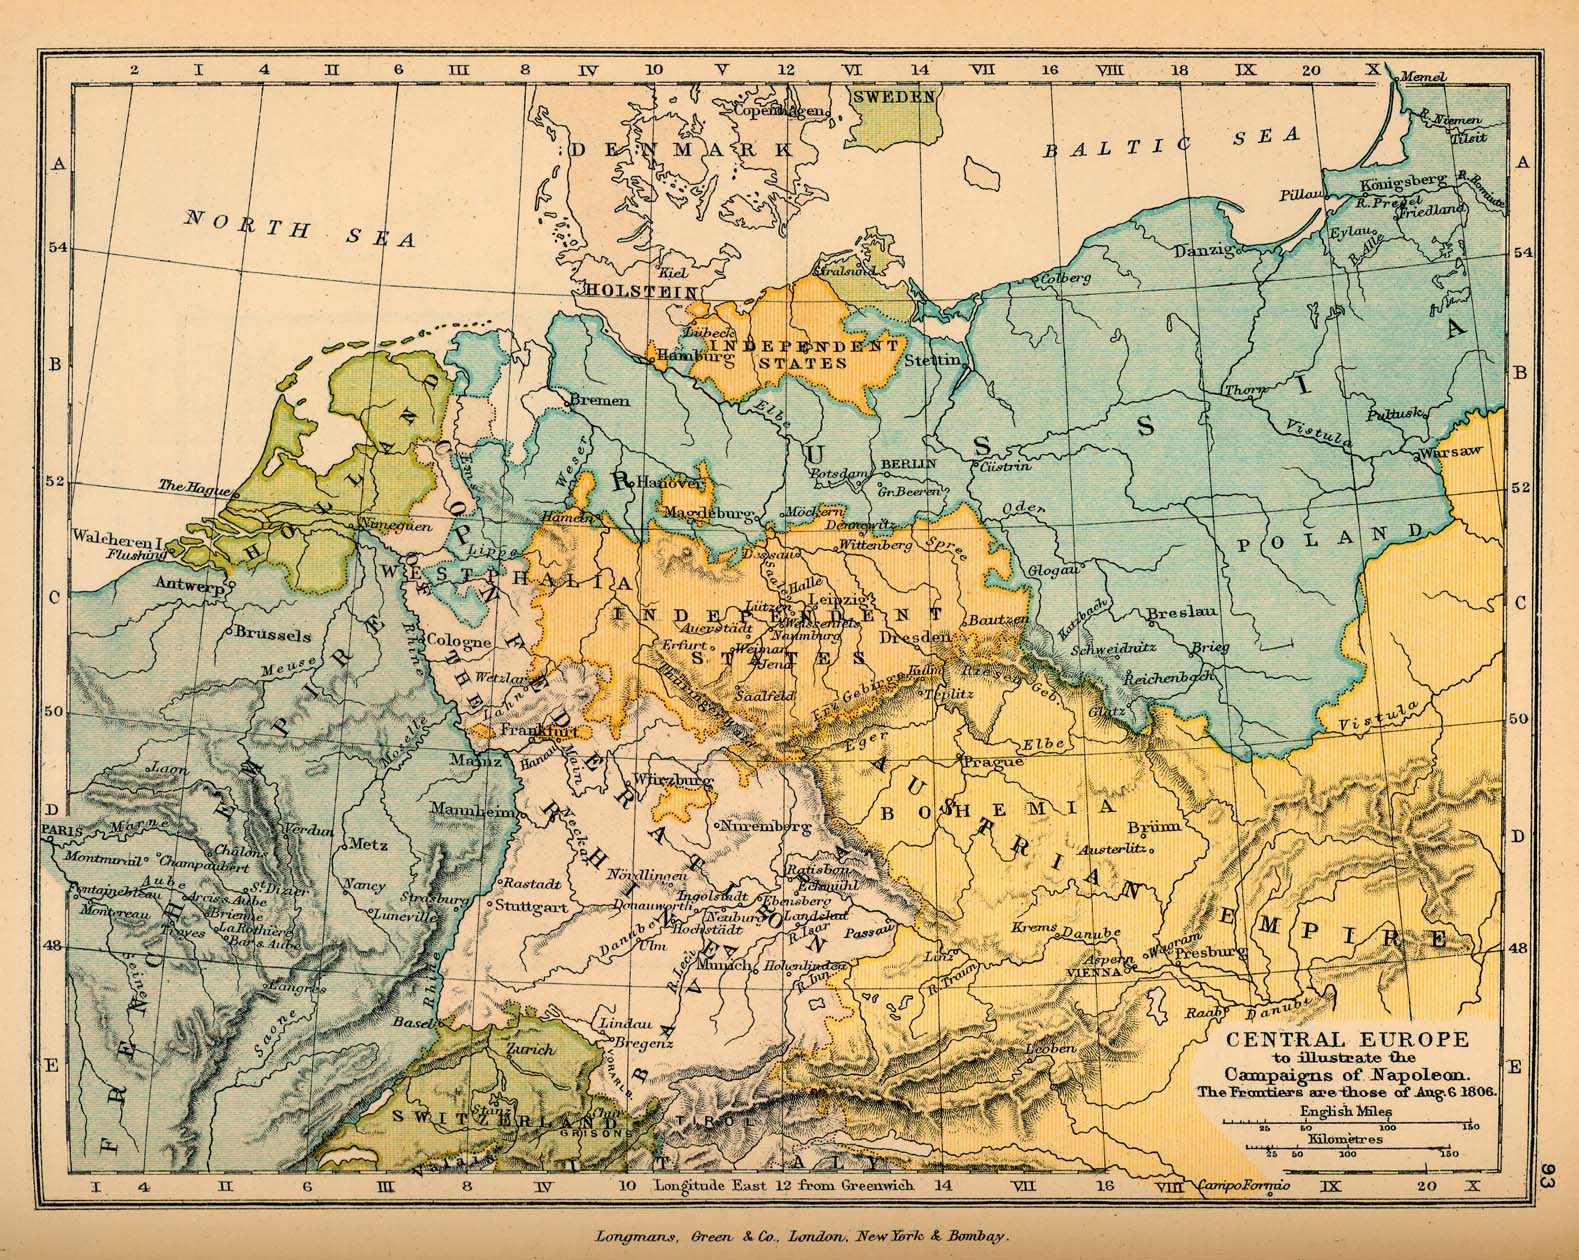 Europa Central, 6 de agosto de 1806